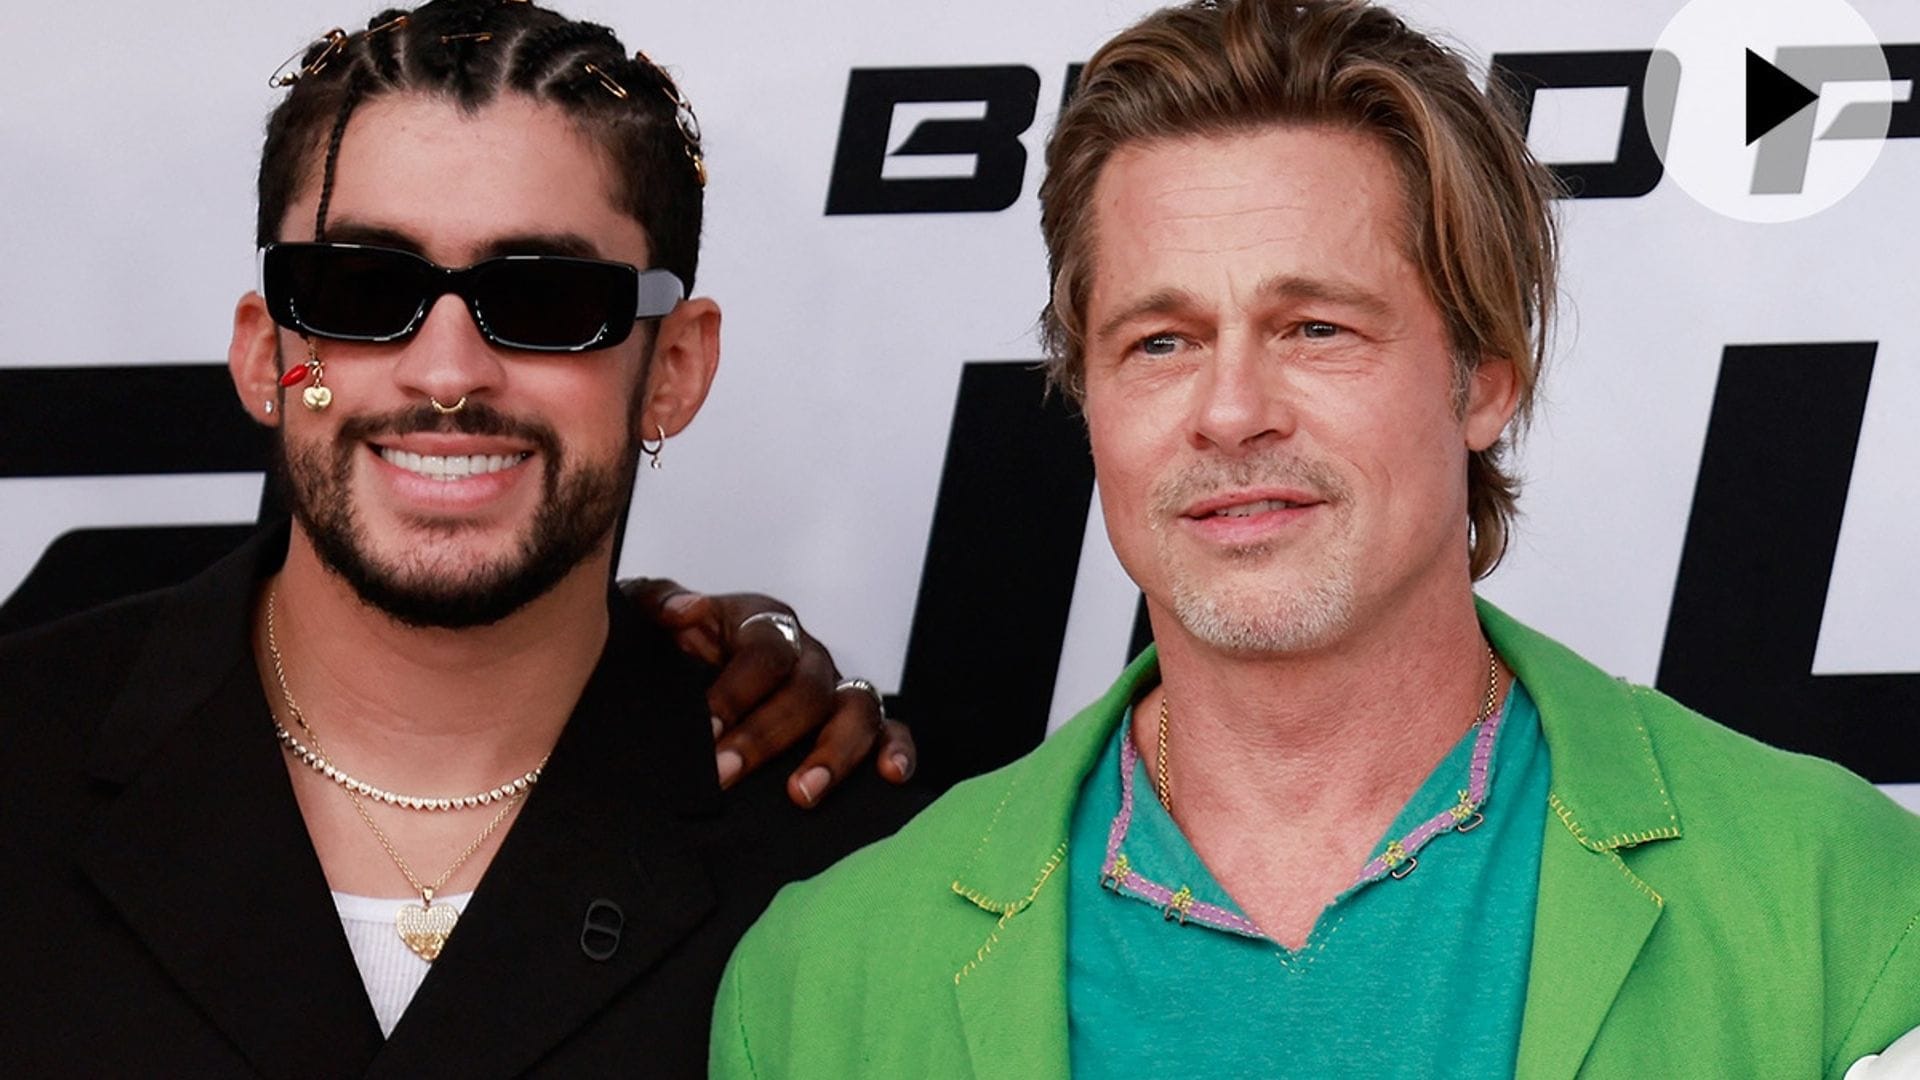 La realidad detrás del simpático video entre Brad Pitt y Bad Bunny